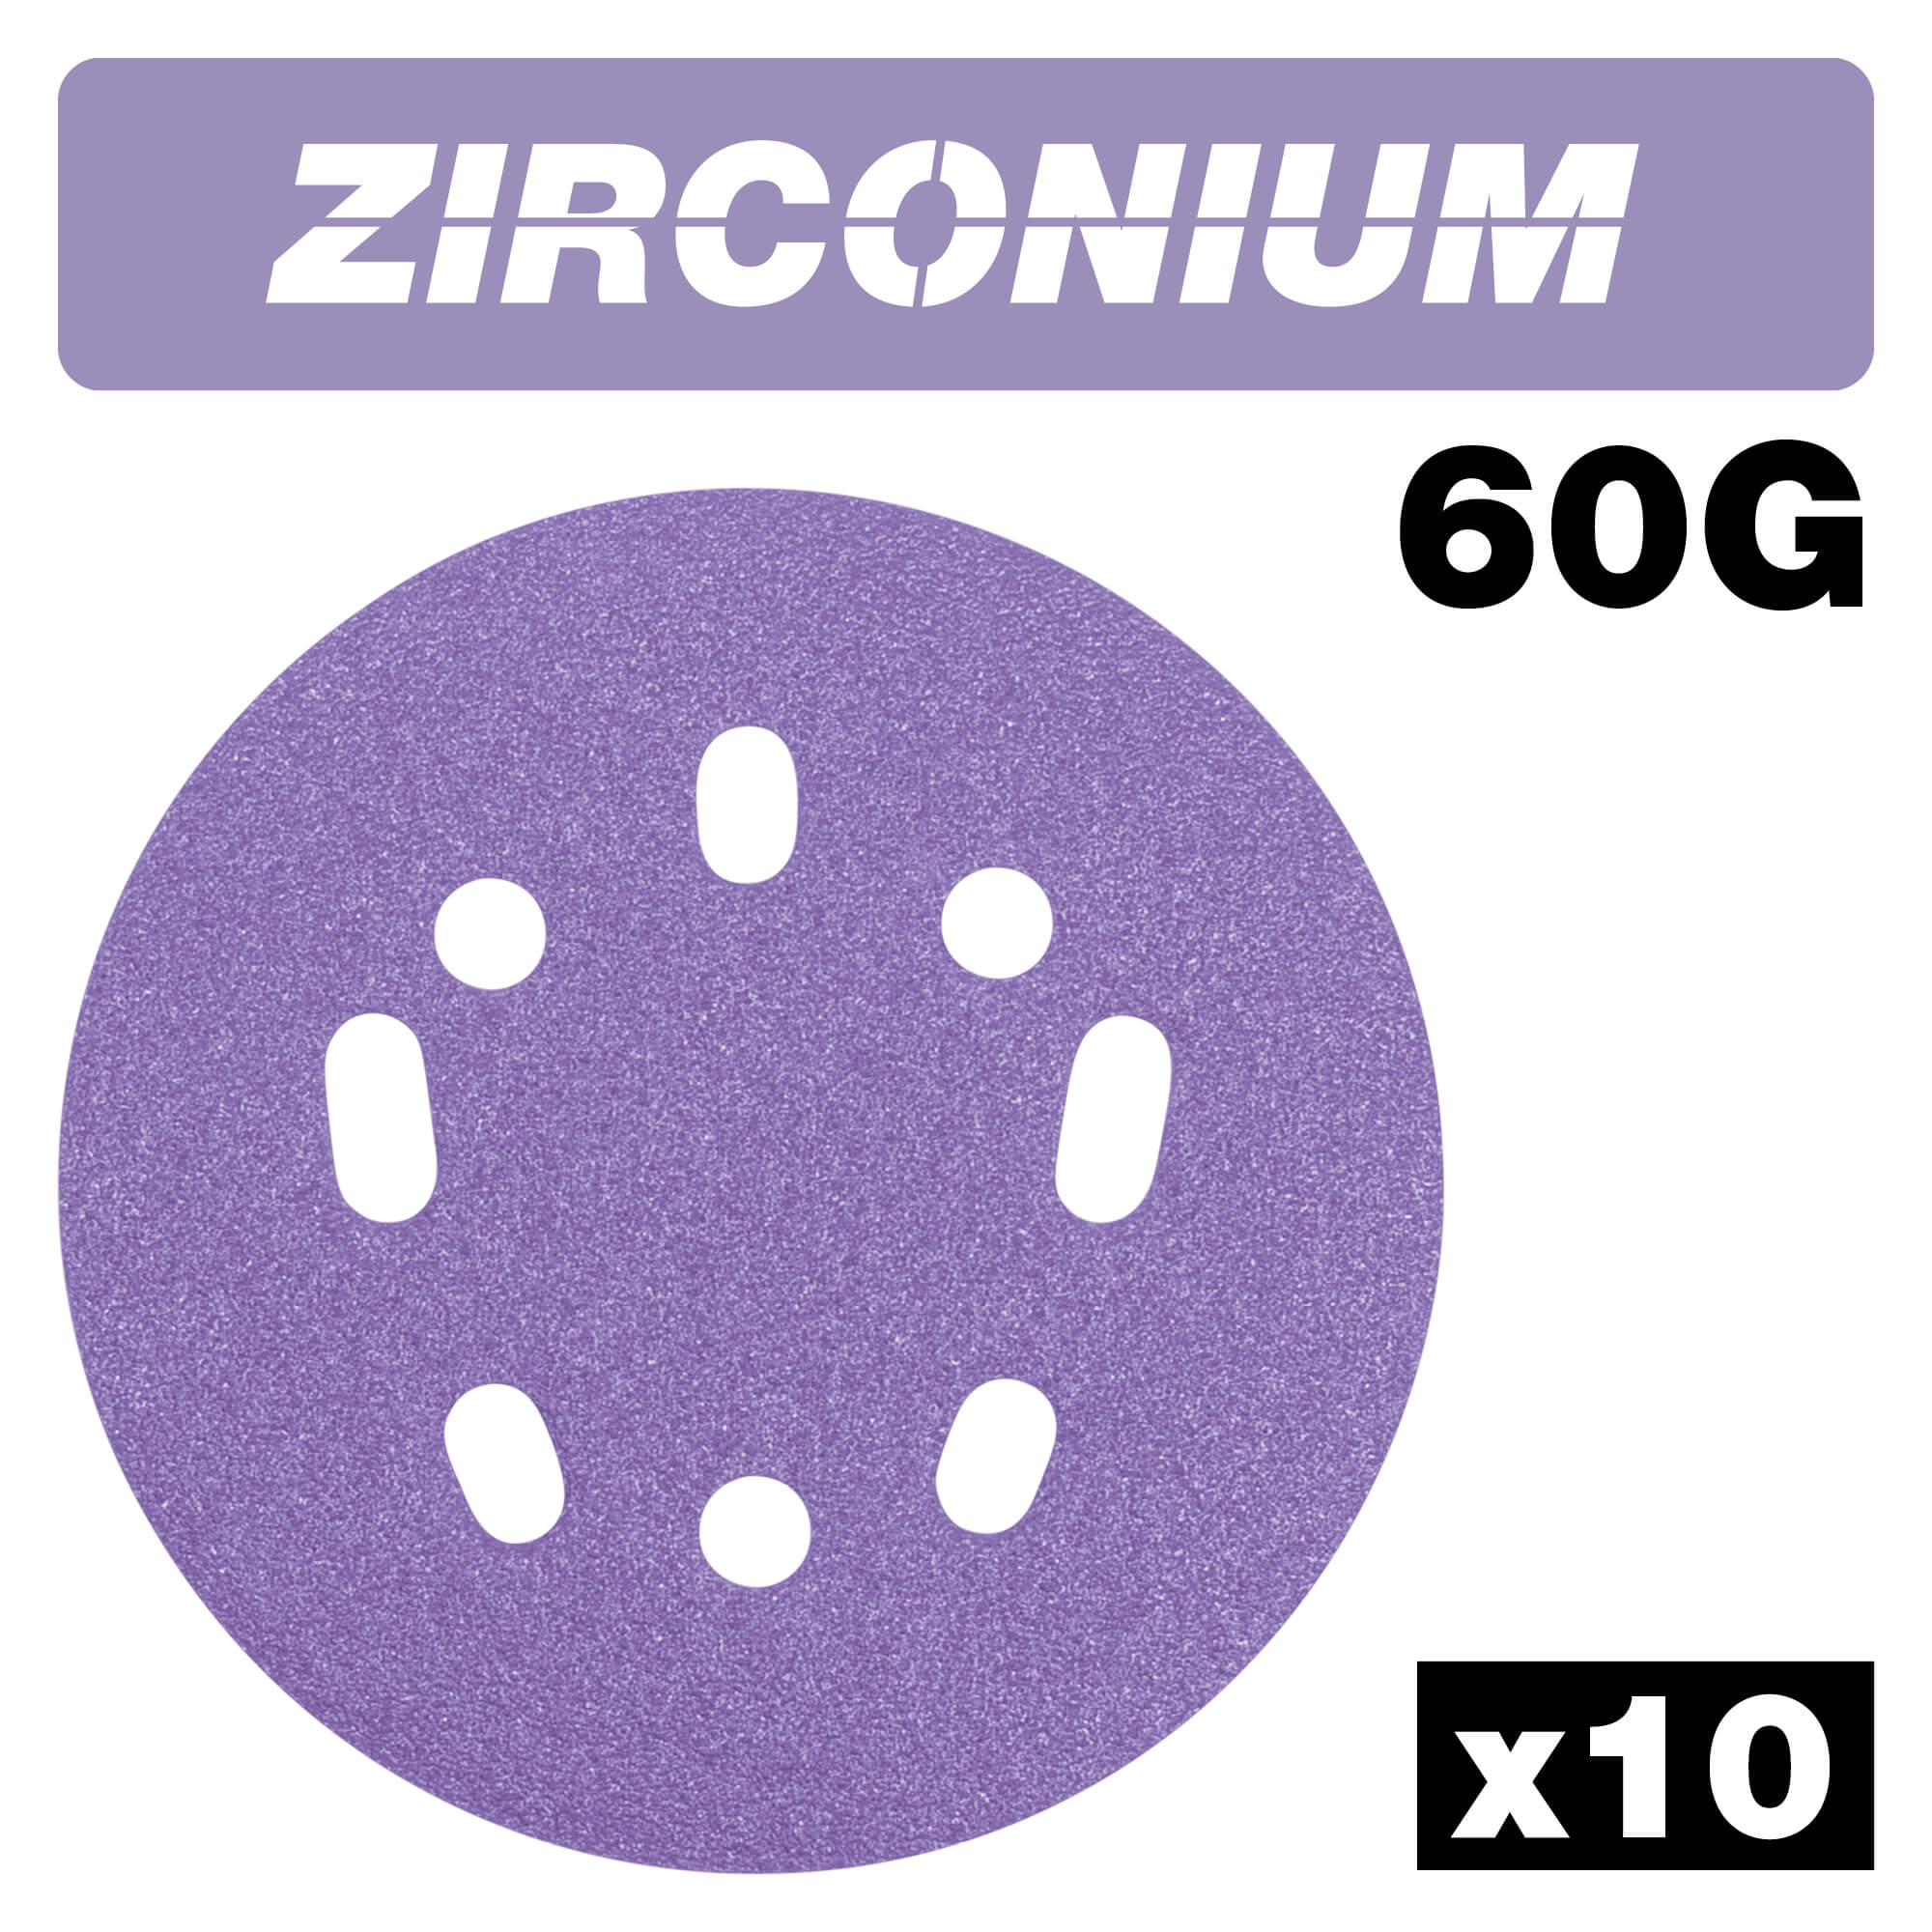 Photo of Trend Zirconium Random Orbital Sanding Disc 125mm 125mm 60g Pack Of 10